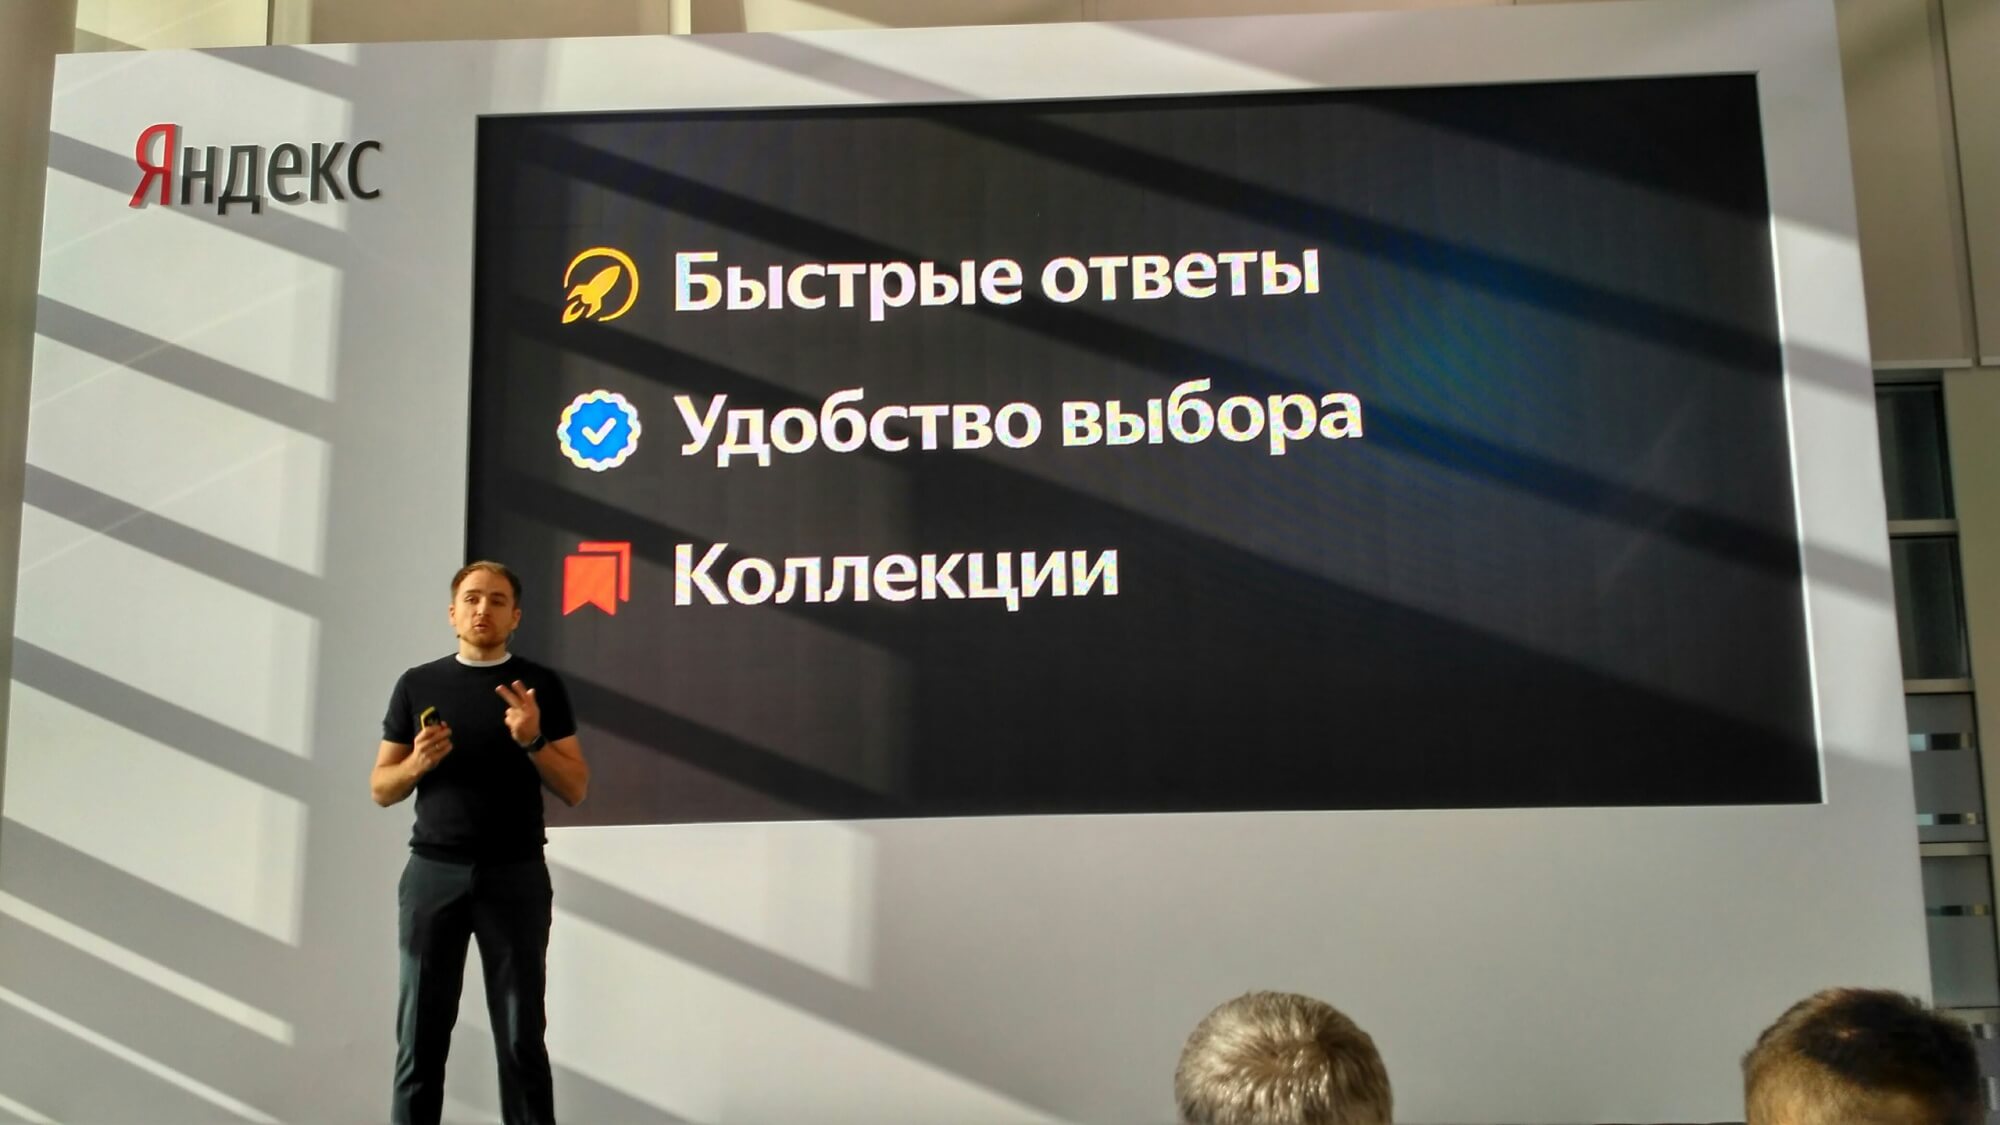 Яндекс запустил крупное обновление для поиска «Андромеда»